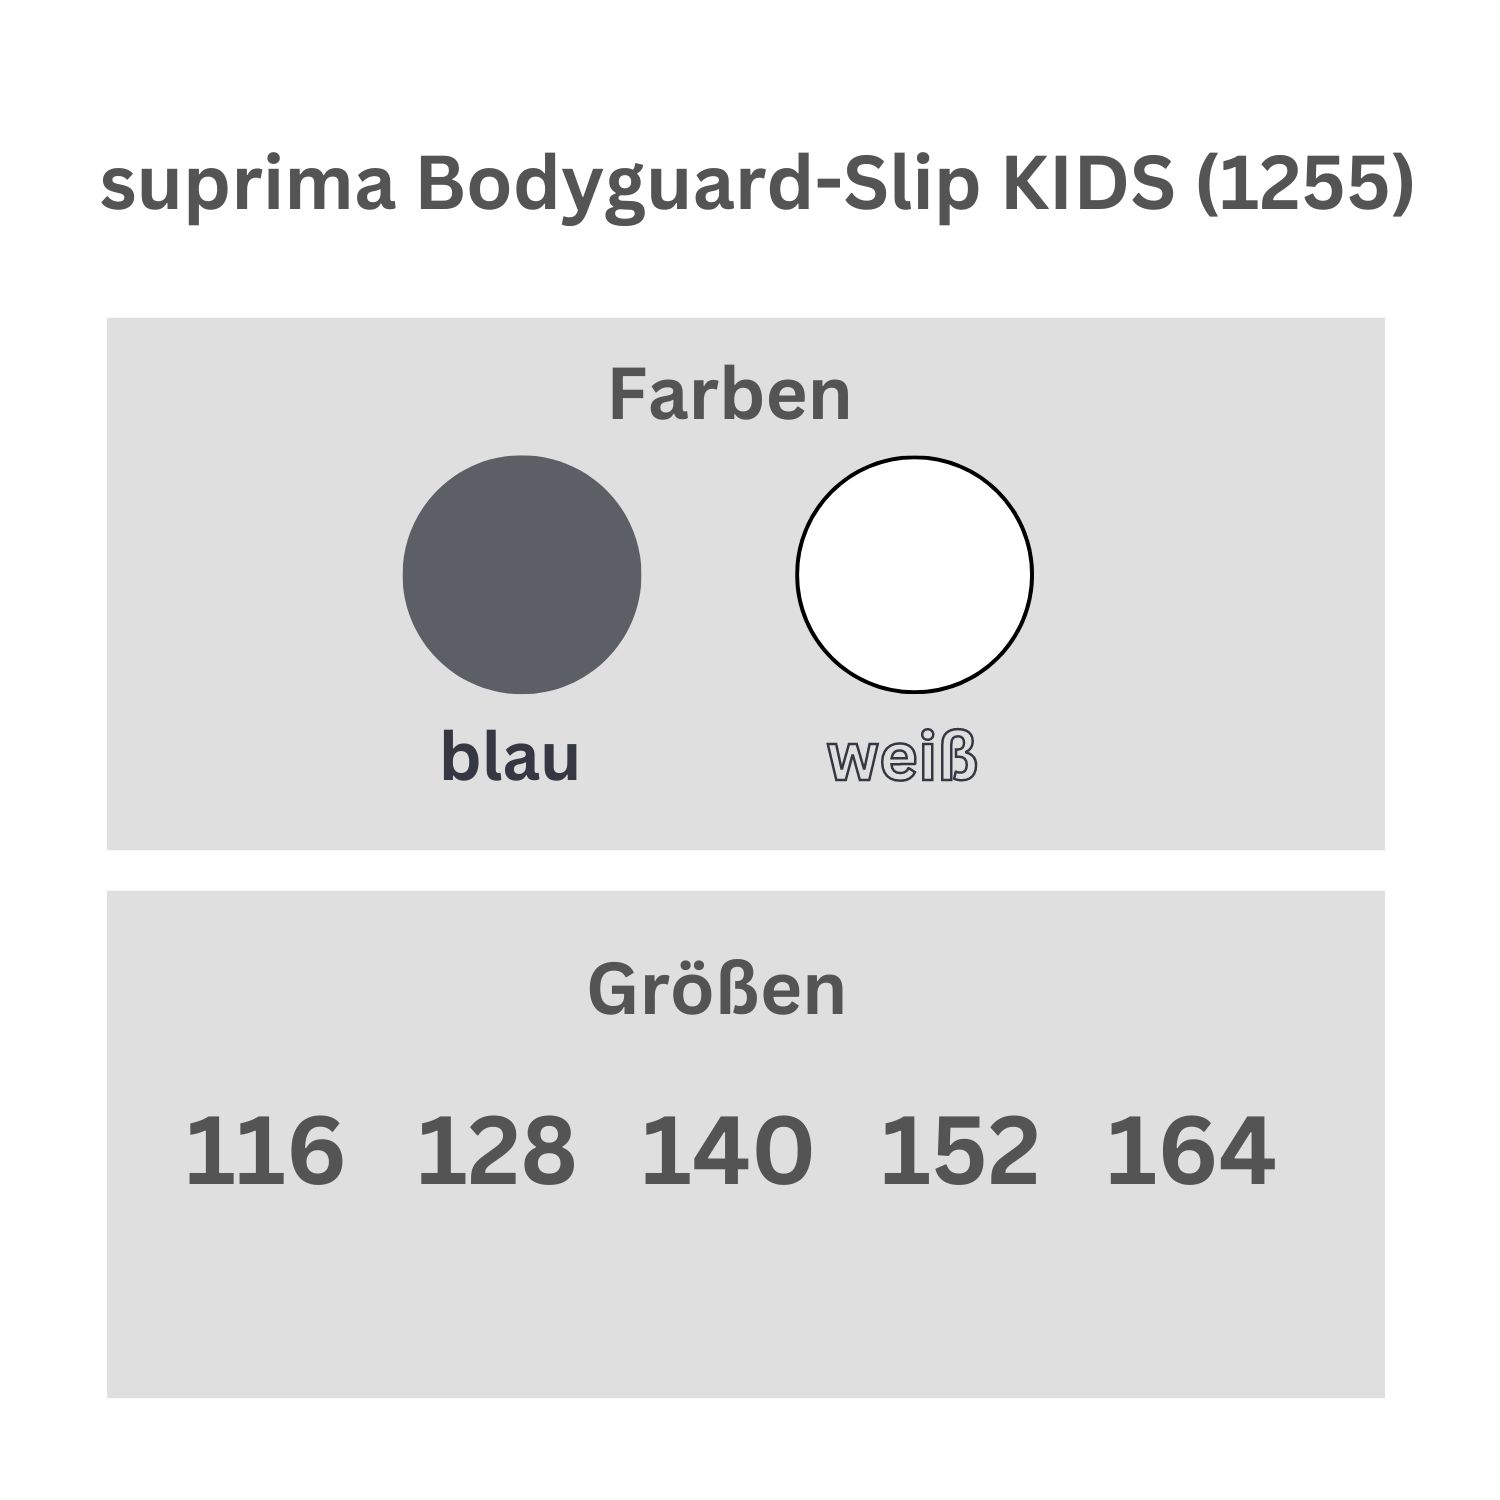 suprima Bodyguard-Slip KIDS (1255)